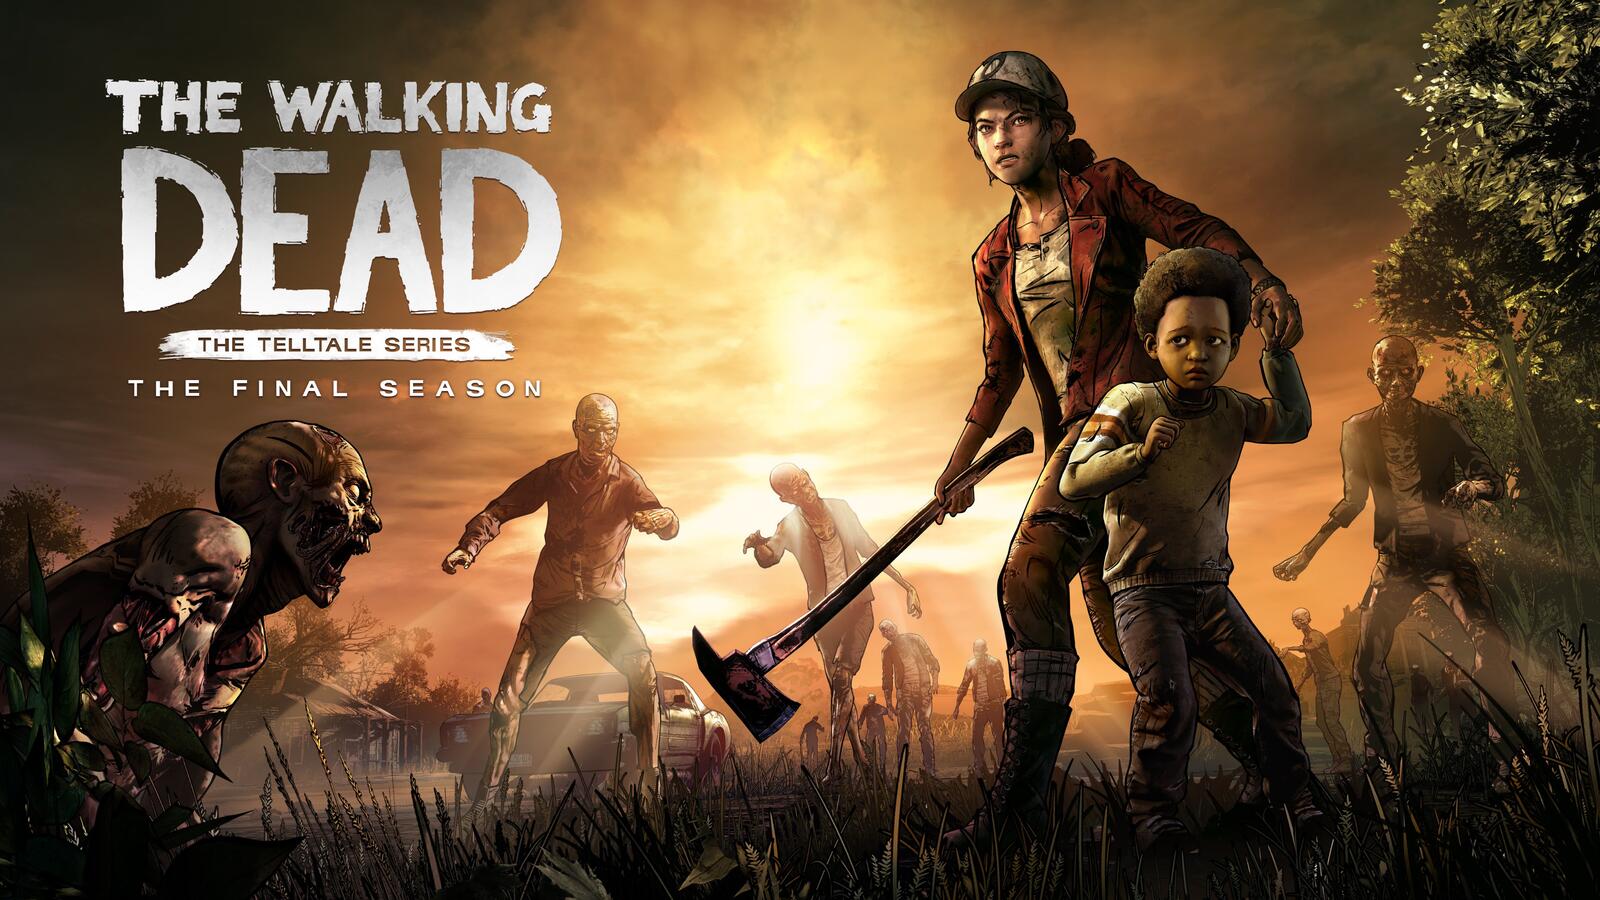 Wallpapers The Walking Dead The Final Season the Walking dead the 2018 Games on the desktop